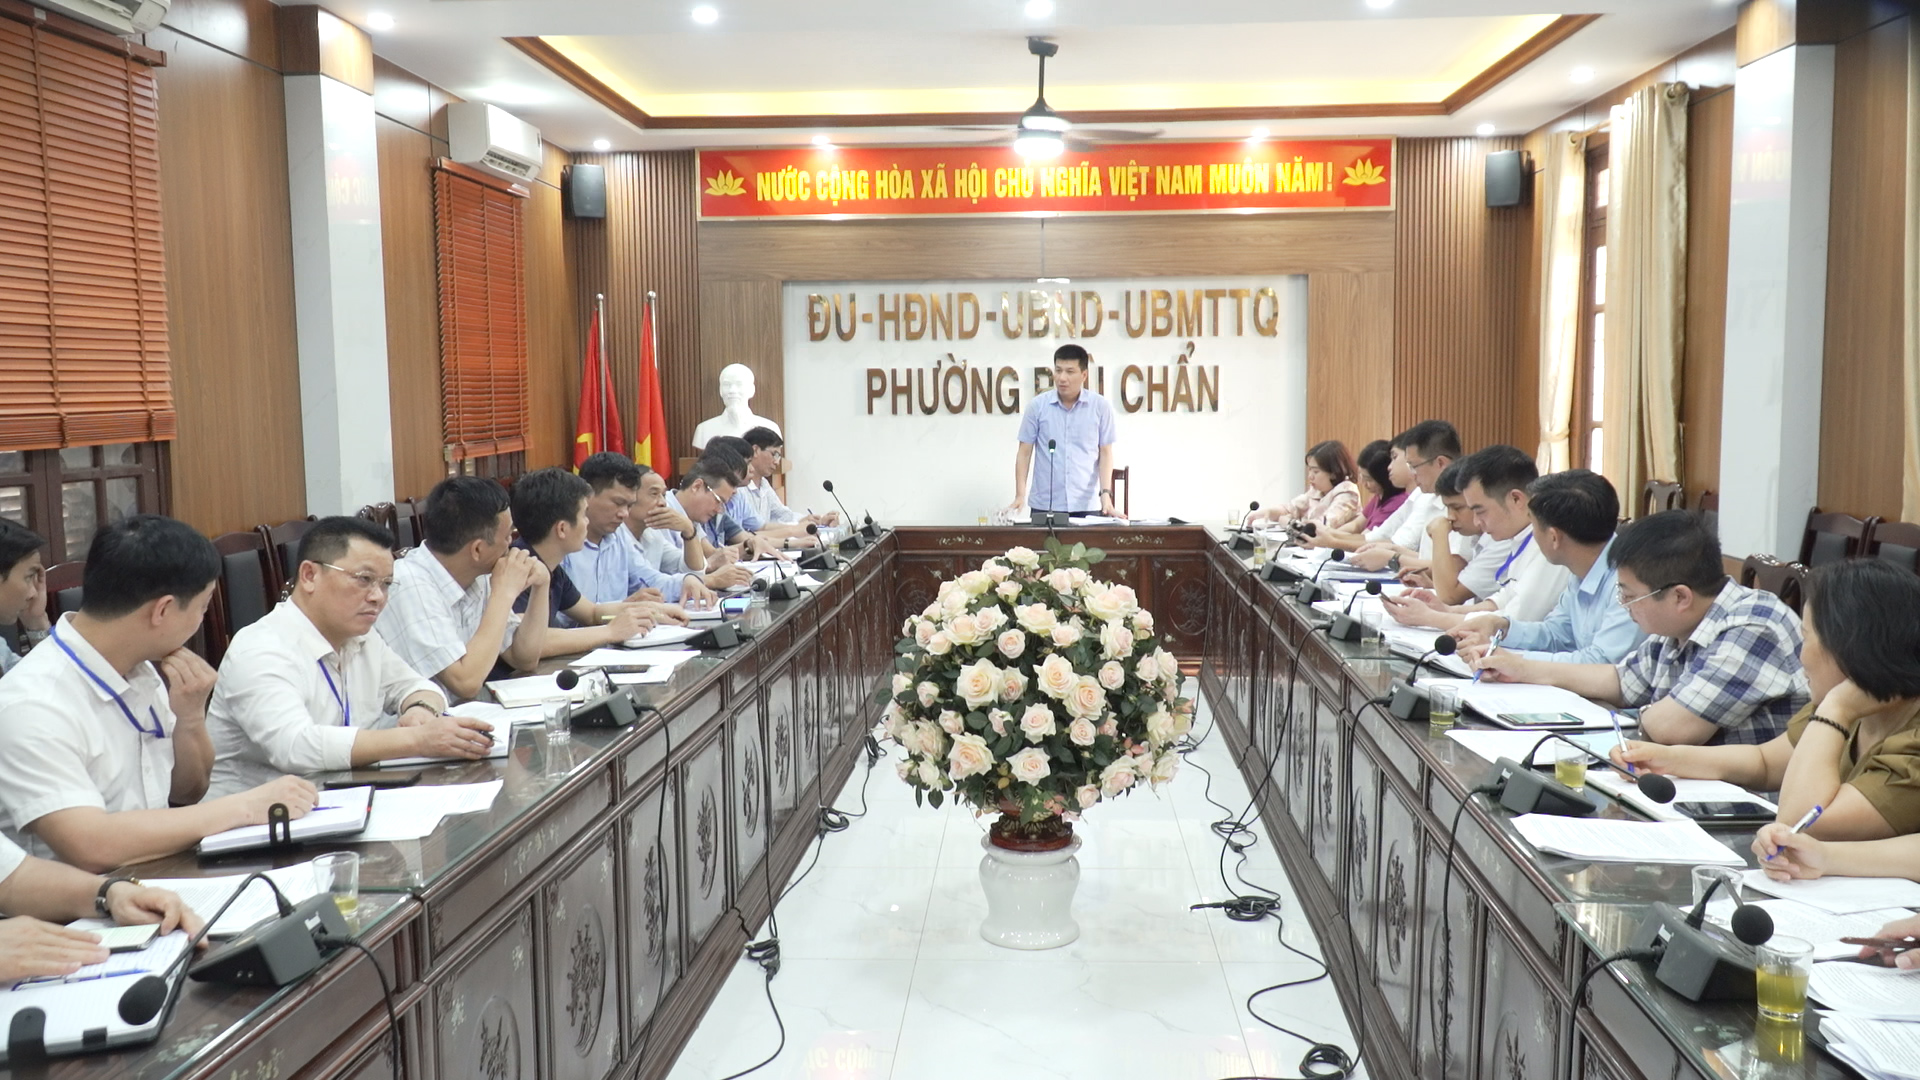 UBND thành phố Từ Sơn làm việc với phường Phù Chẩn về thực hiện kết luận 739, 740 của BTV tỉnh ủy Bắc Ninh